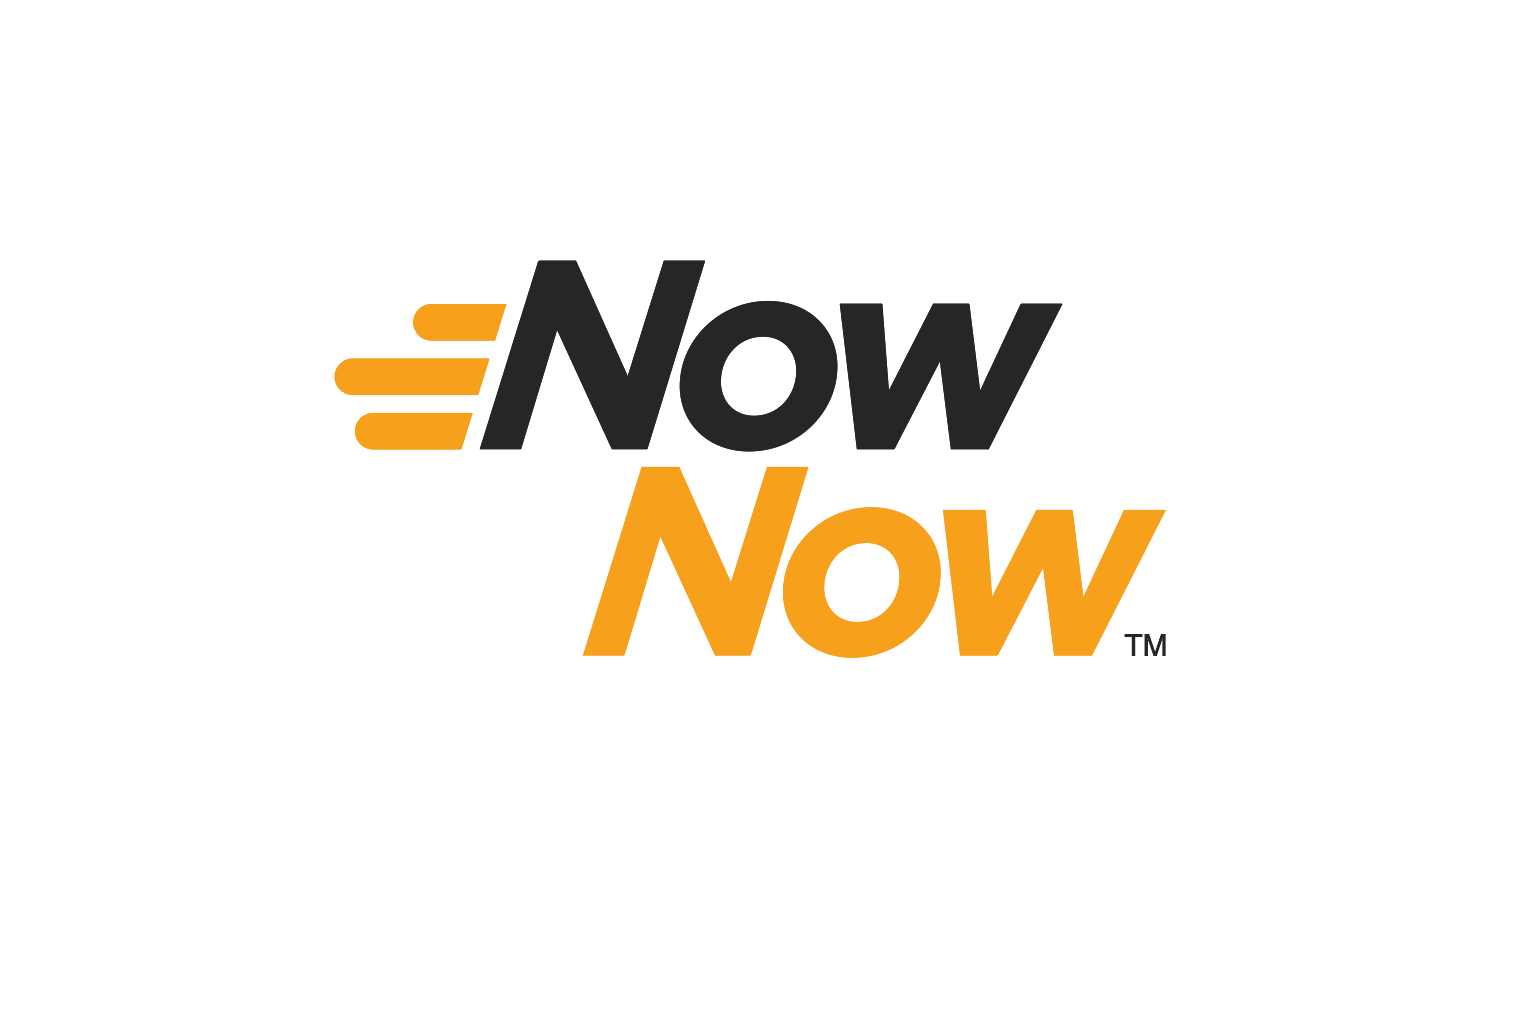 NowNow financial literacy initiative